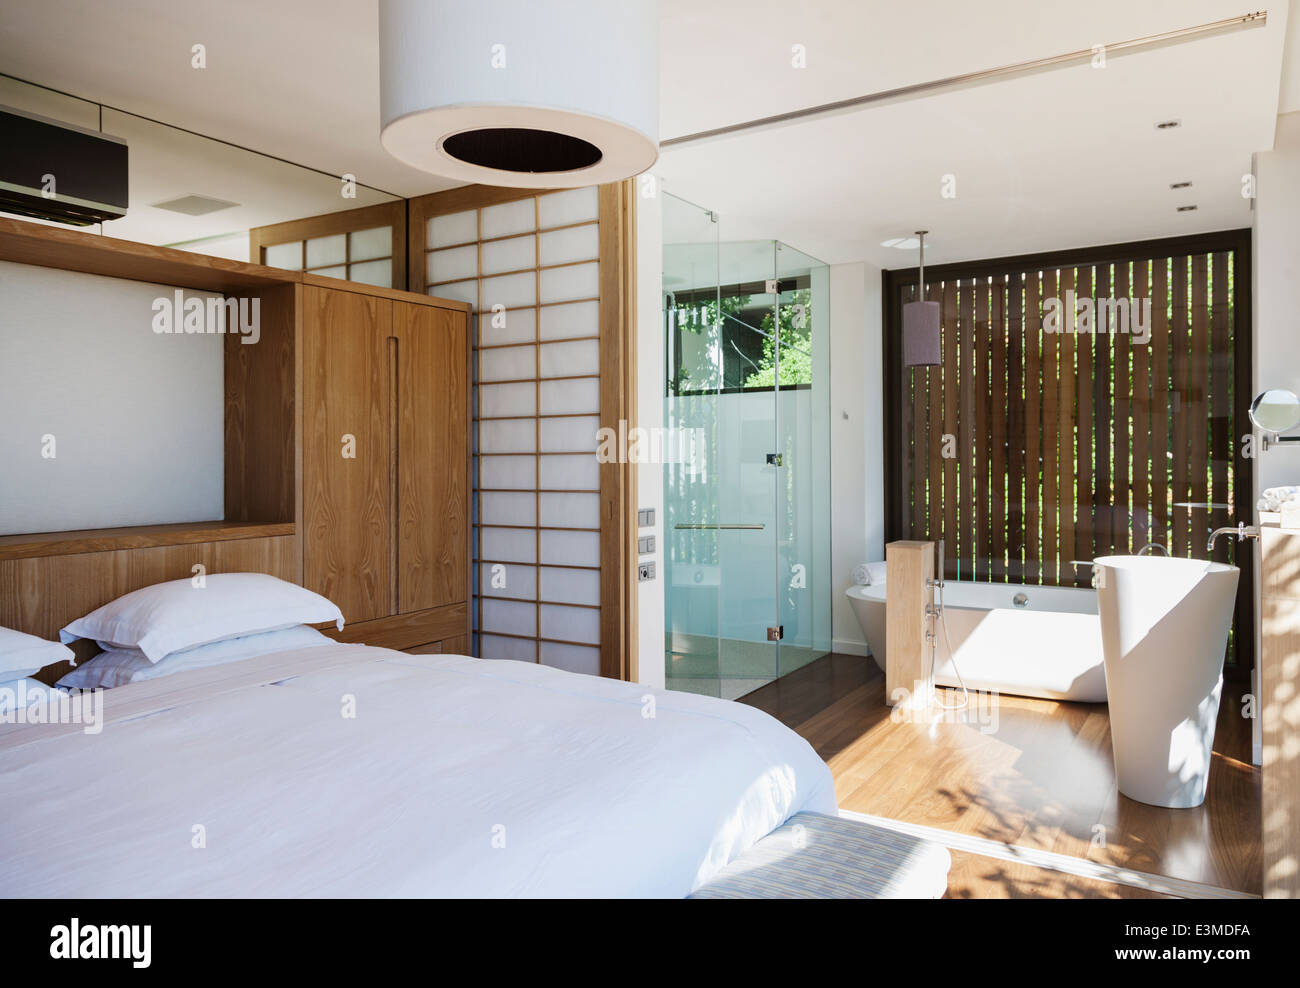 Luxury bedroom and en suite bathroom Stock Photo